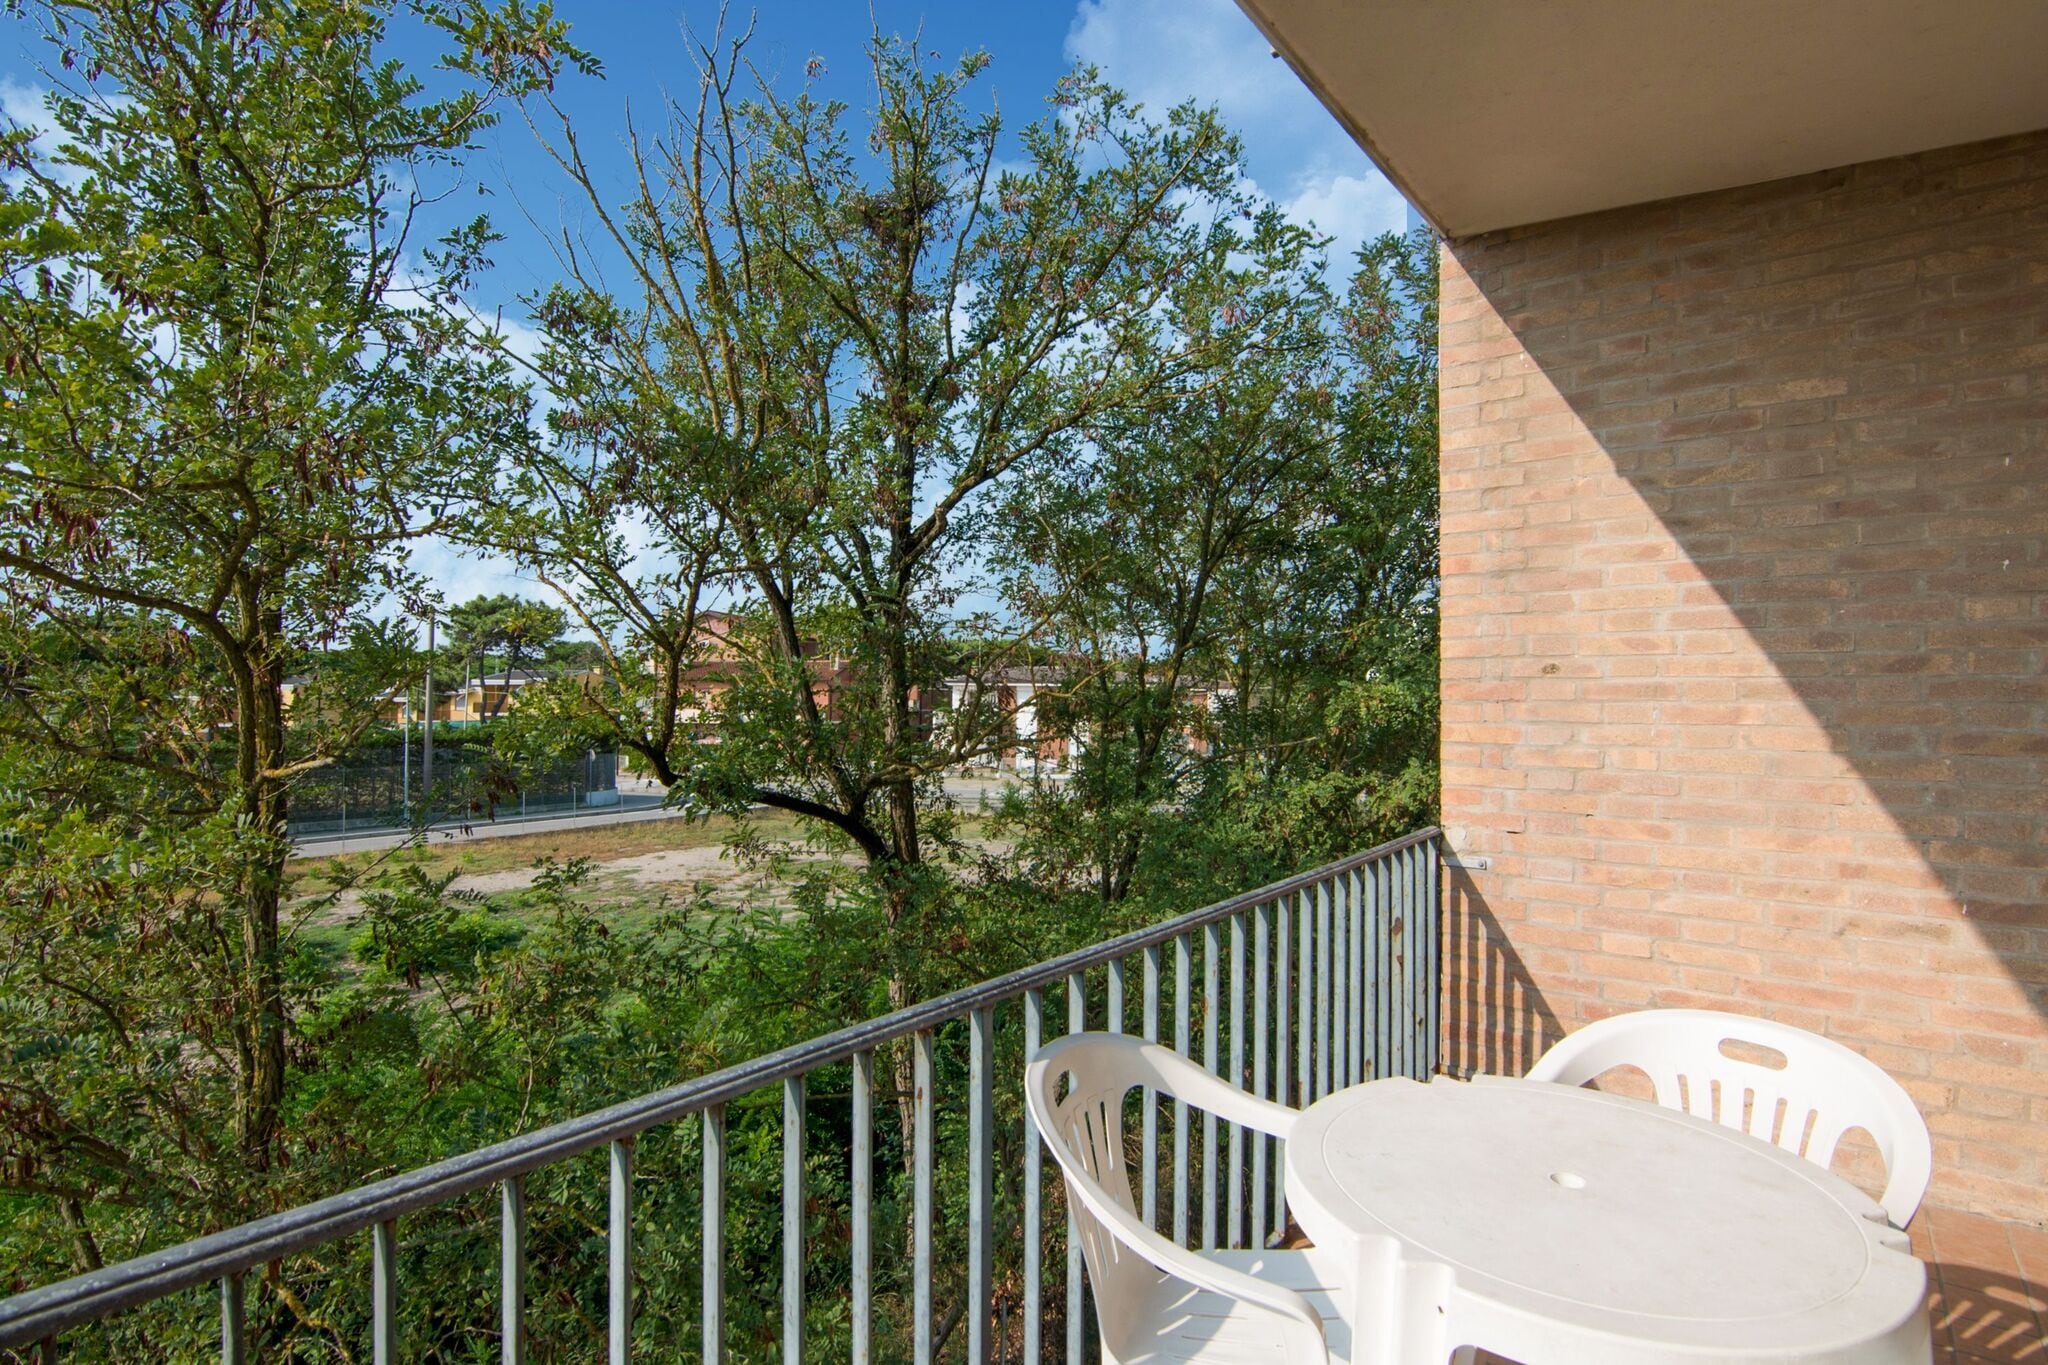 Appartement charmant situé à Rosolina Mare, près de Venise